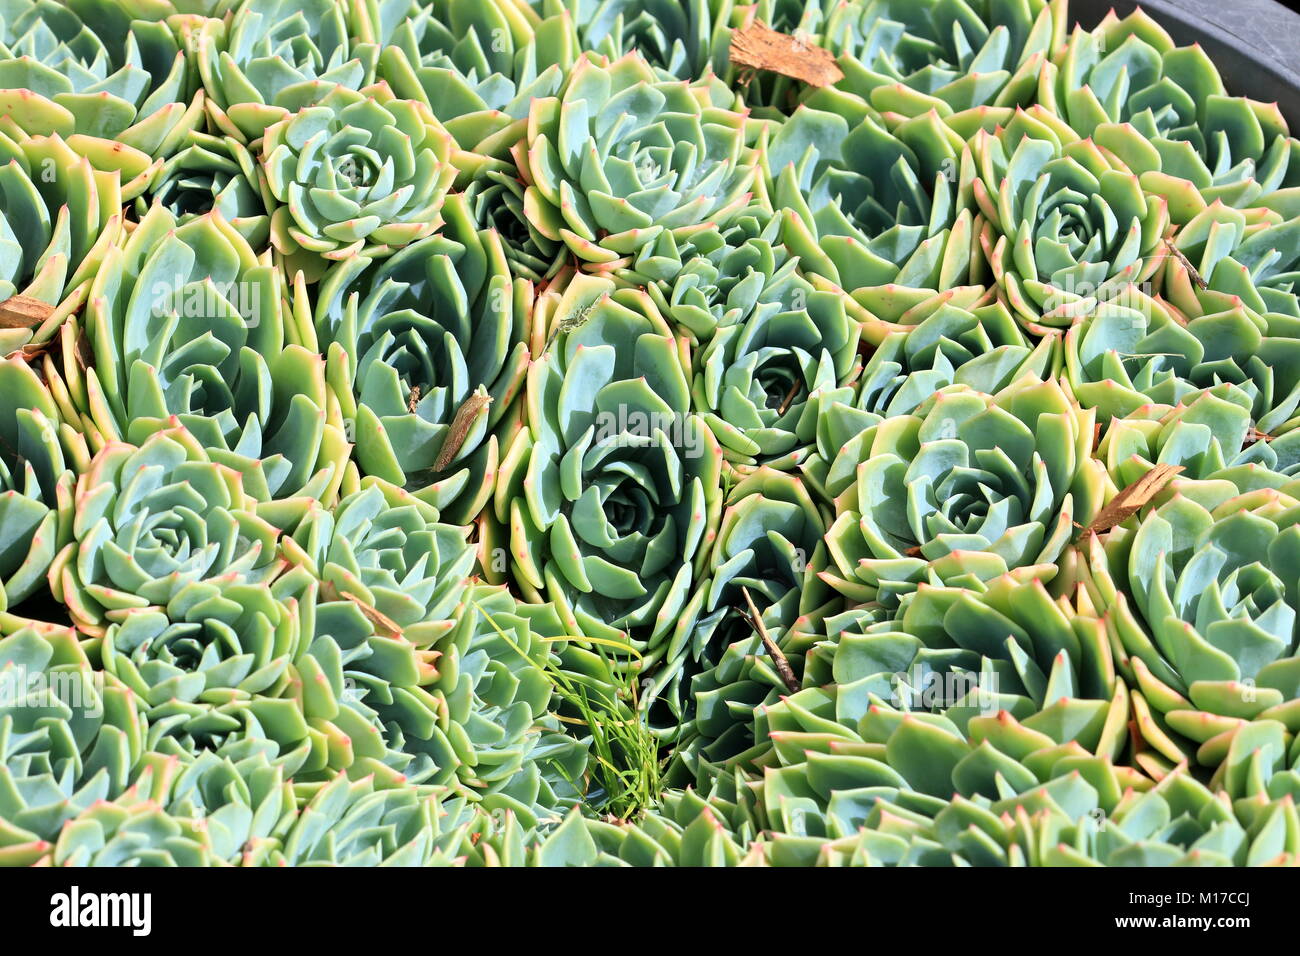 Close up image d'echeveria glauca ou connu comme Aeonium ou appelée Green Rose succulentes Banque D'Images